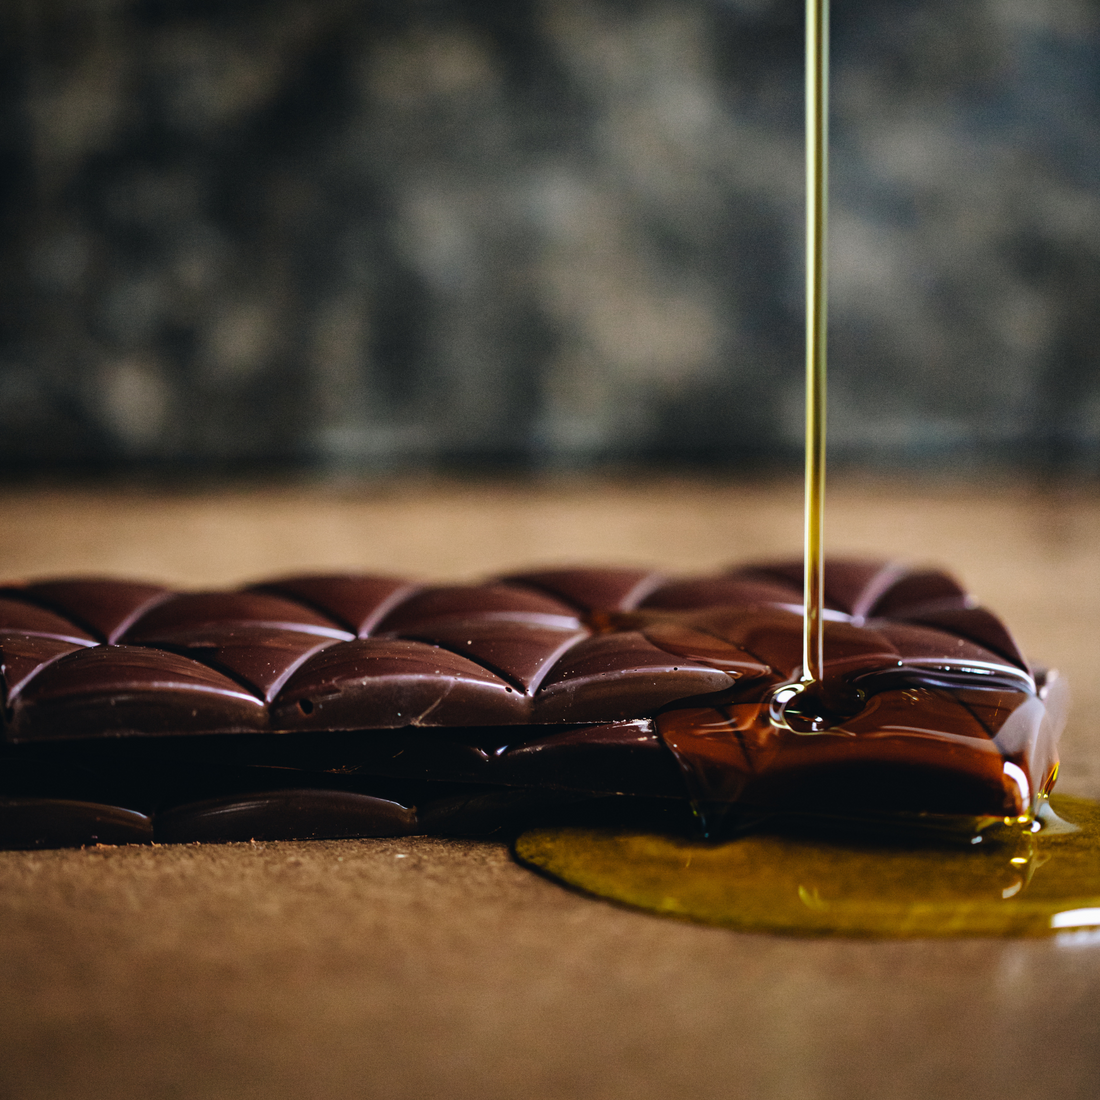 Te Tai Tokerau Olive Oil Dark Chocolate 65%